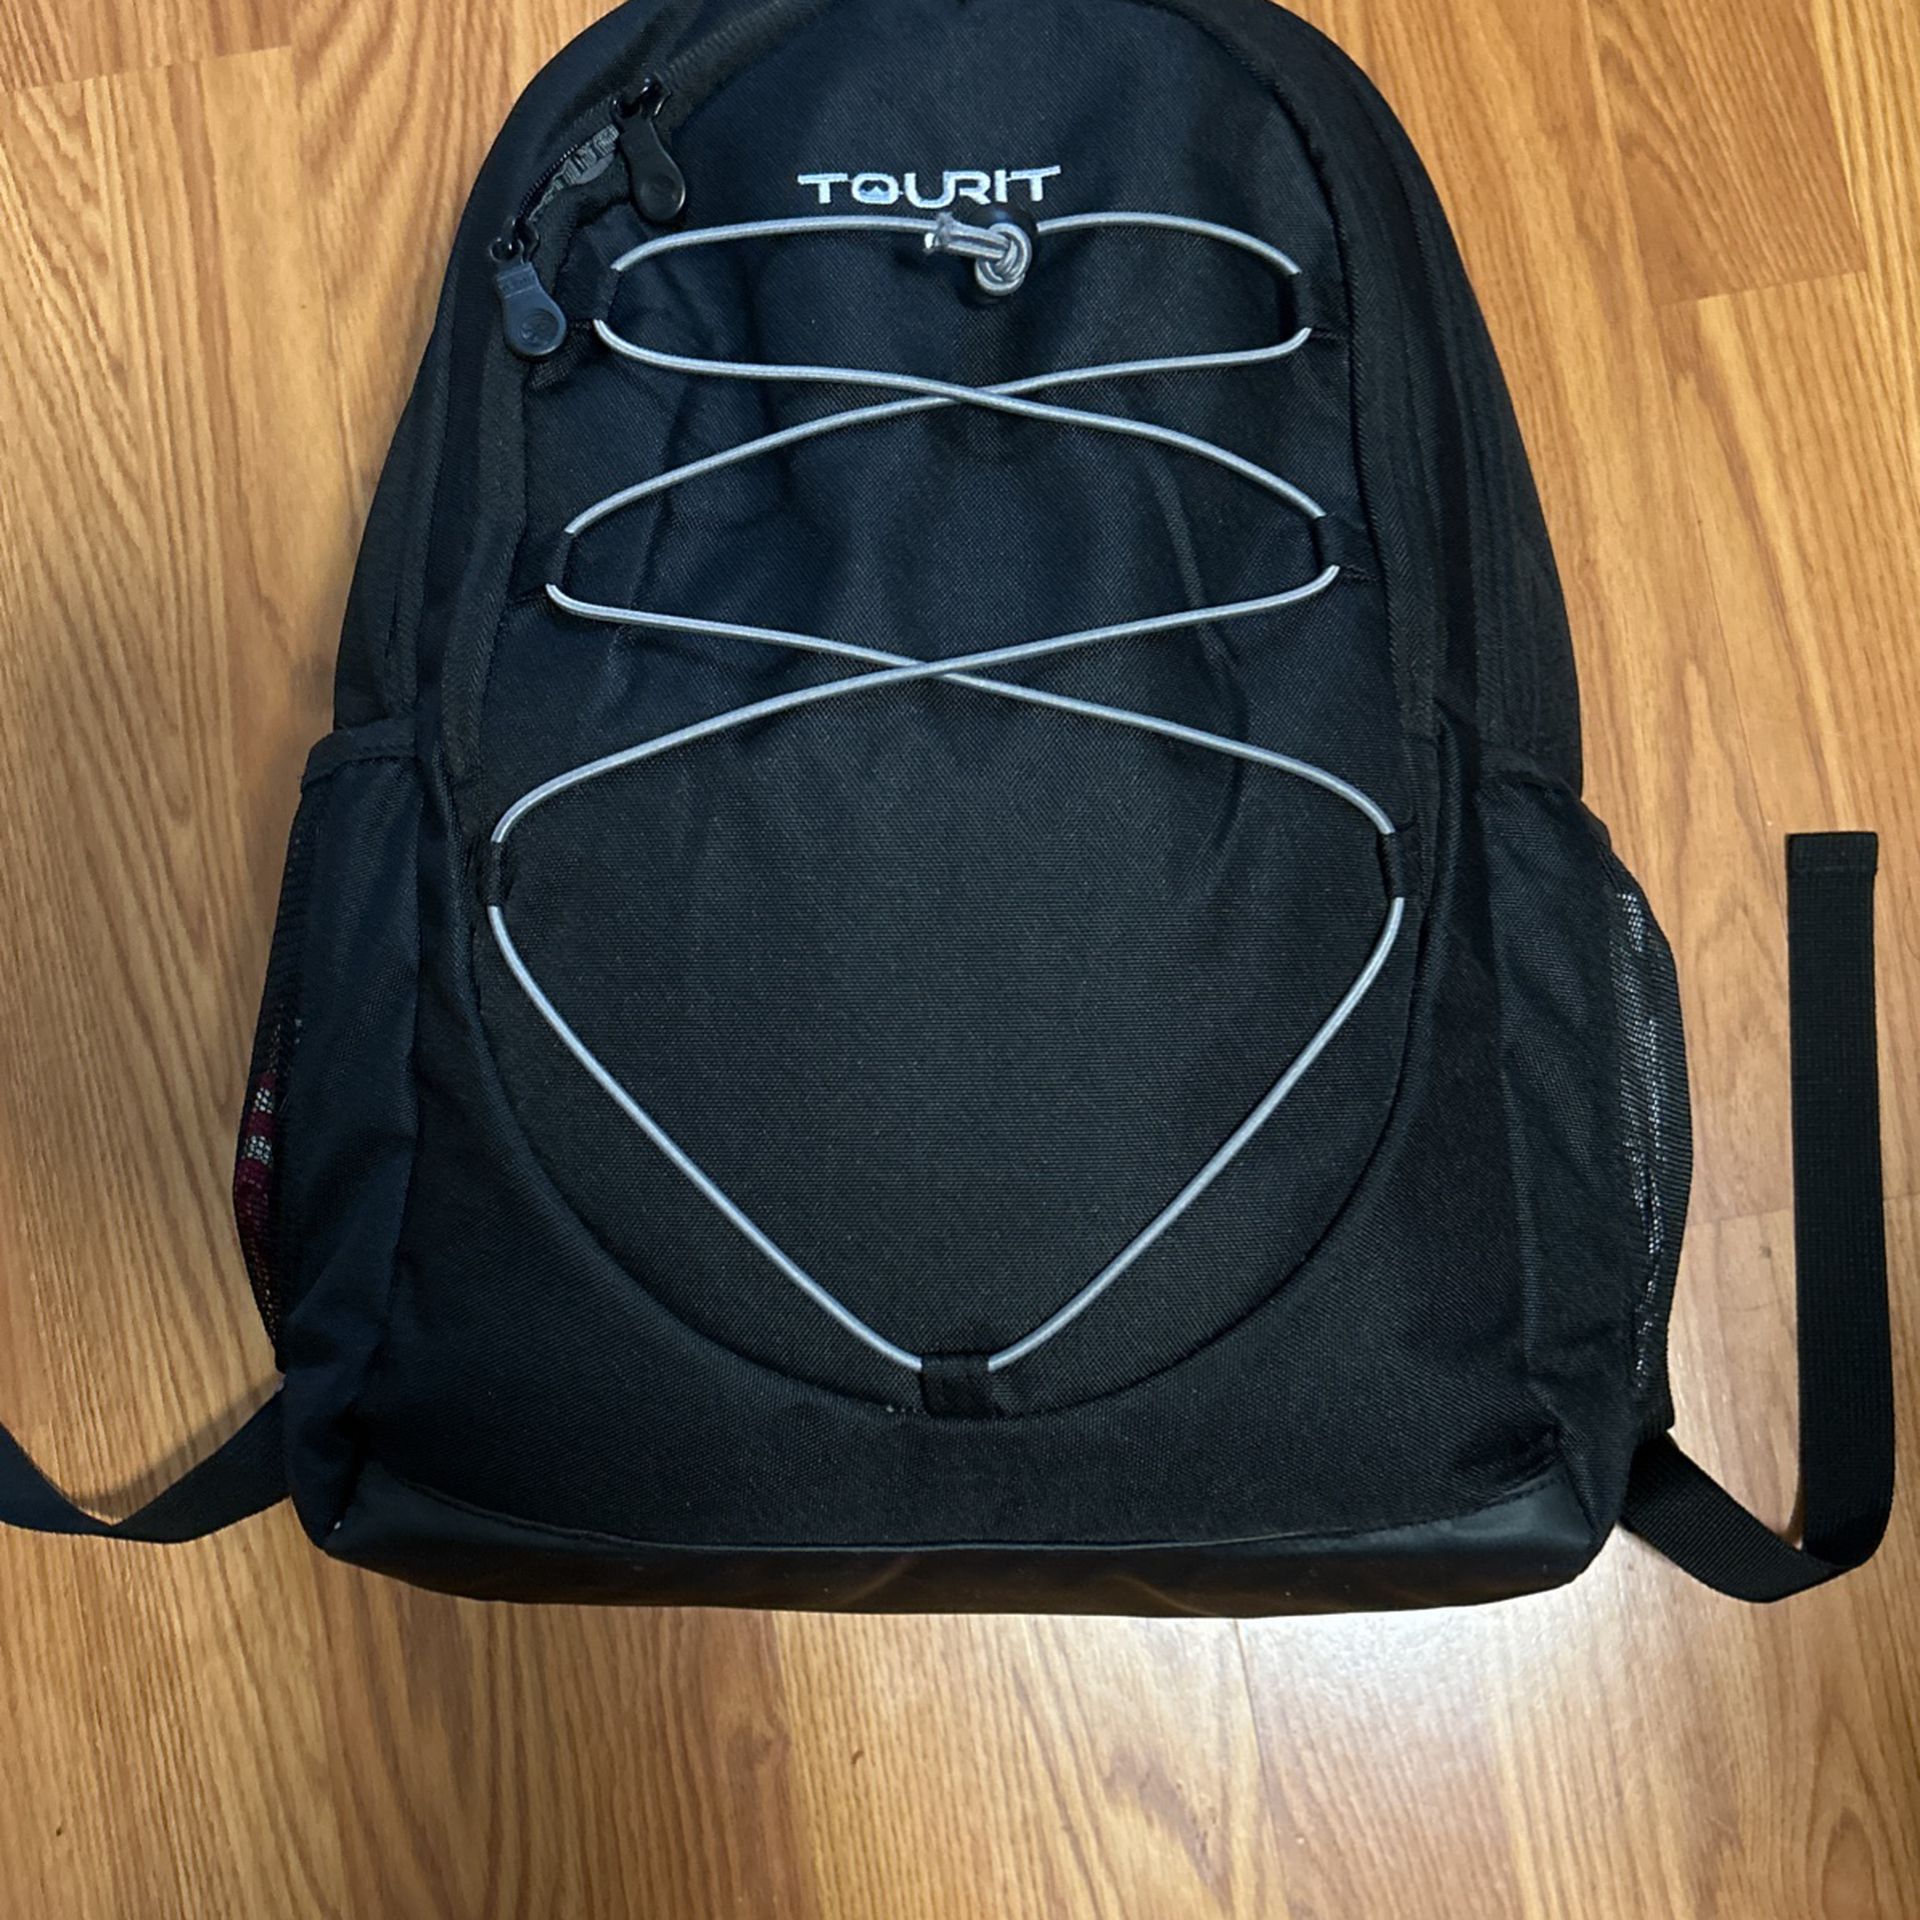 Backpack cooler